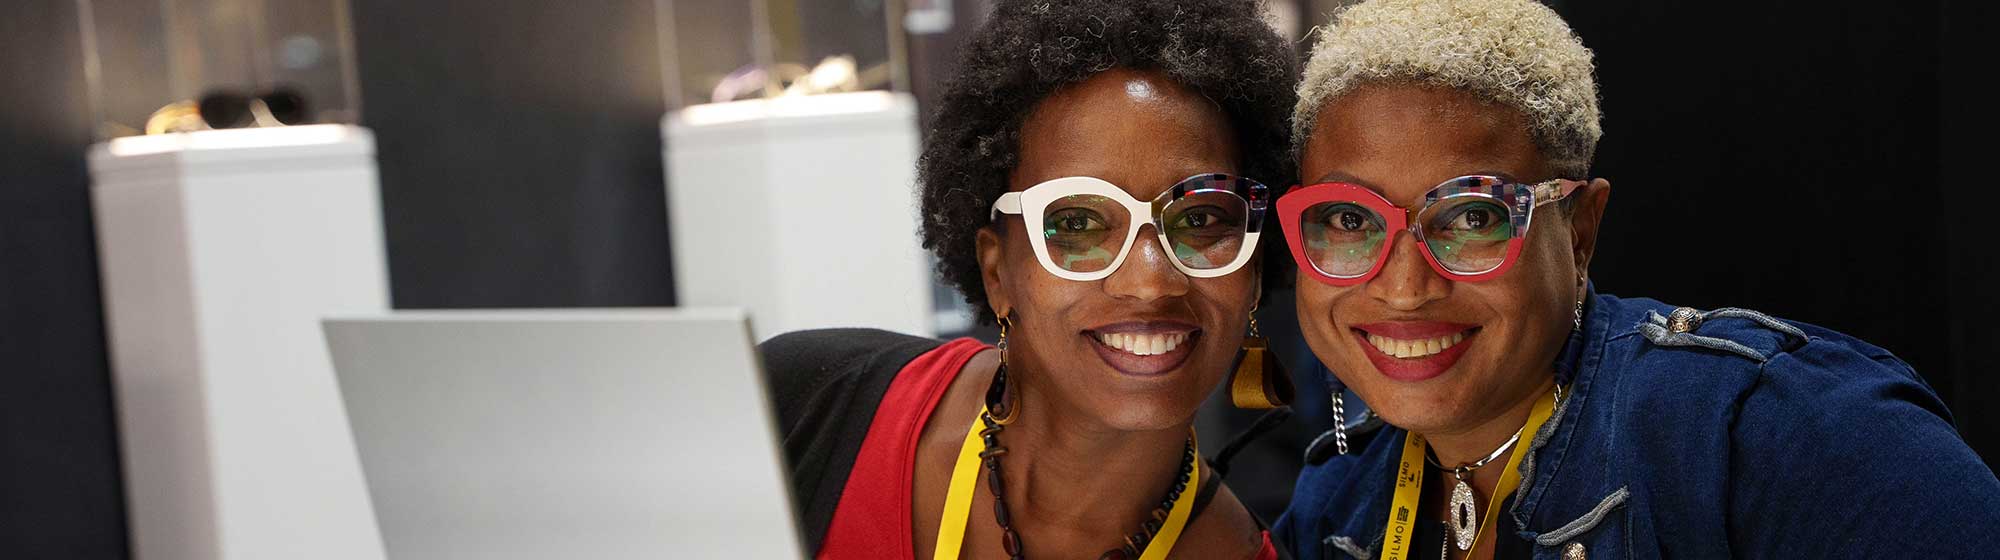 Deux femmes souriant avec des lunettes